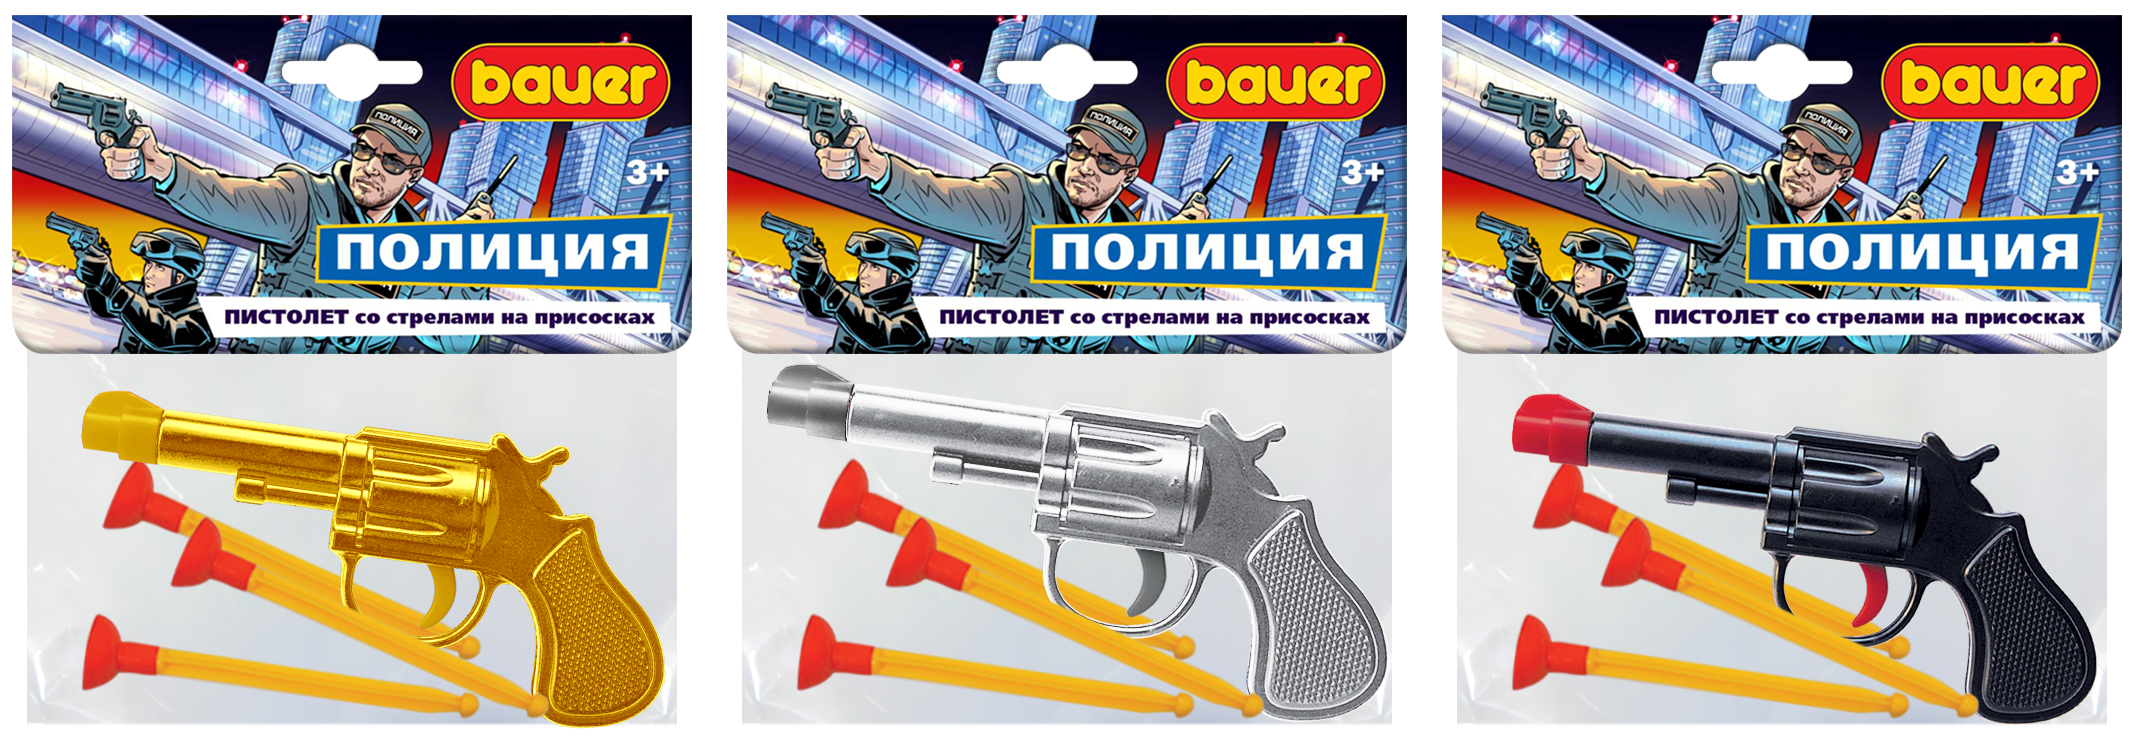 Пистолет игрушечный Bauer Полиция со стрелами на присосках пистолет игрушечный bauer 730 полицейский с мишенью со стрелами на присосках